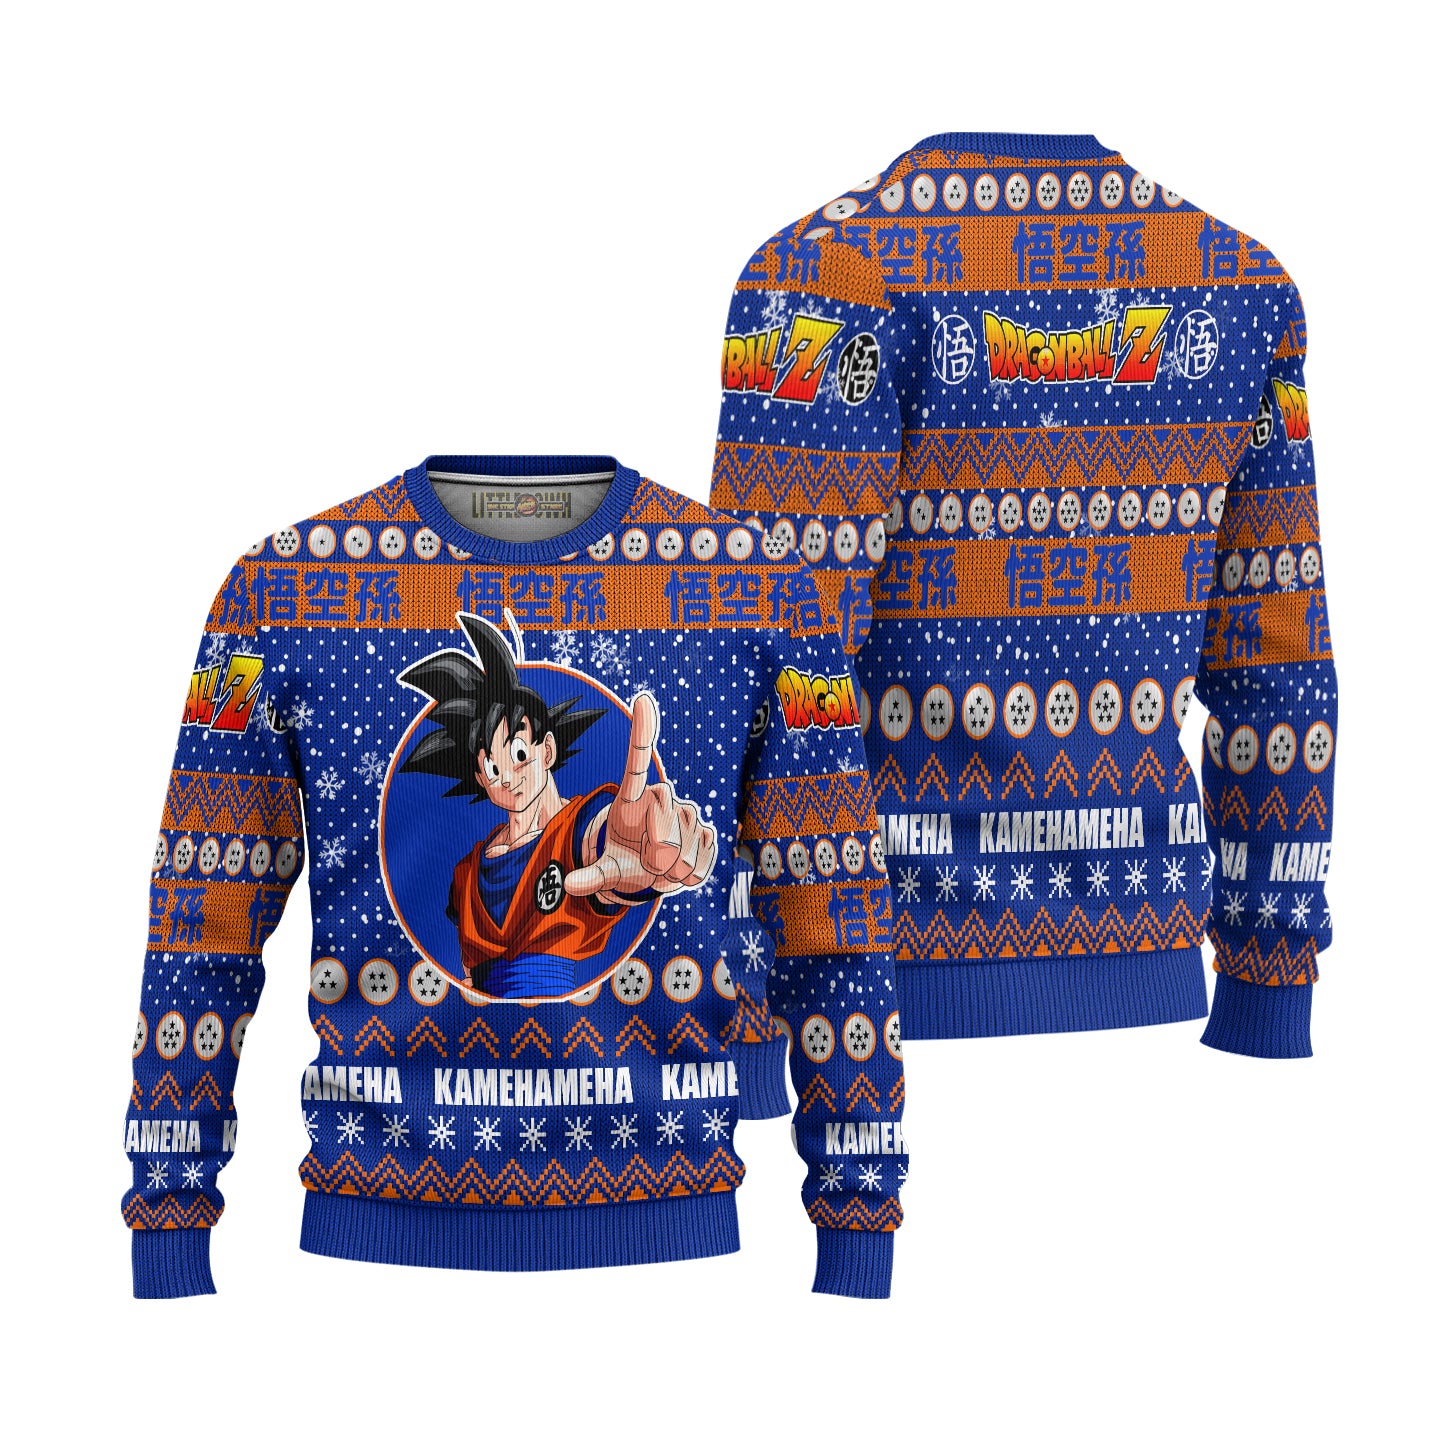 Son Goku Anime Ugly Christmas Sweater Dragon Ball Z New Design